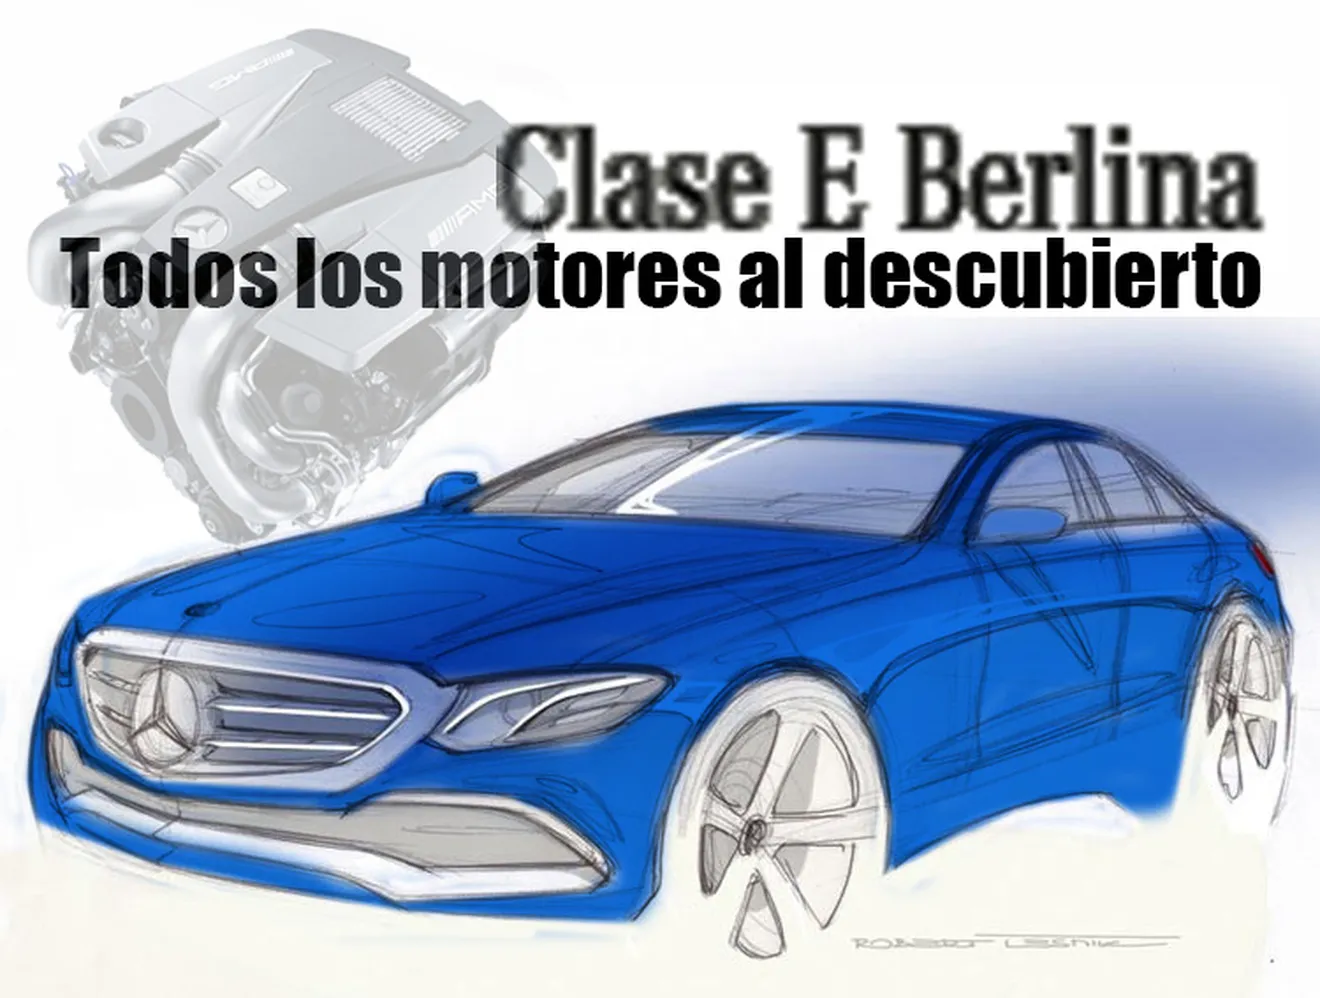 Exclusiva: los motores del Mercedes Clase E 2016 al descubierto